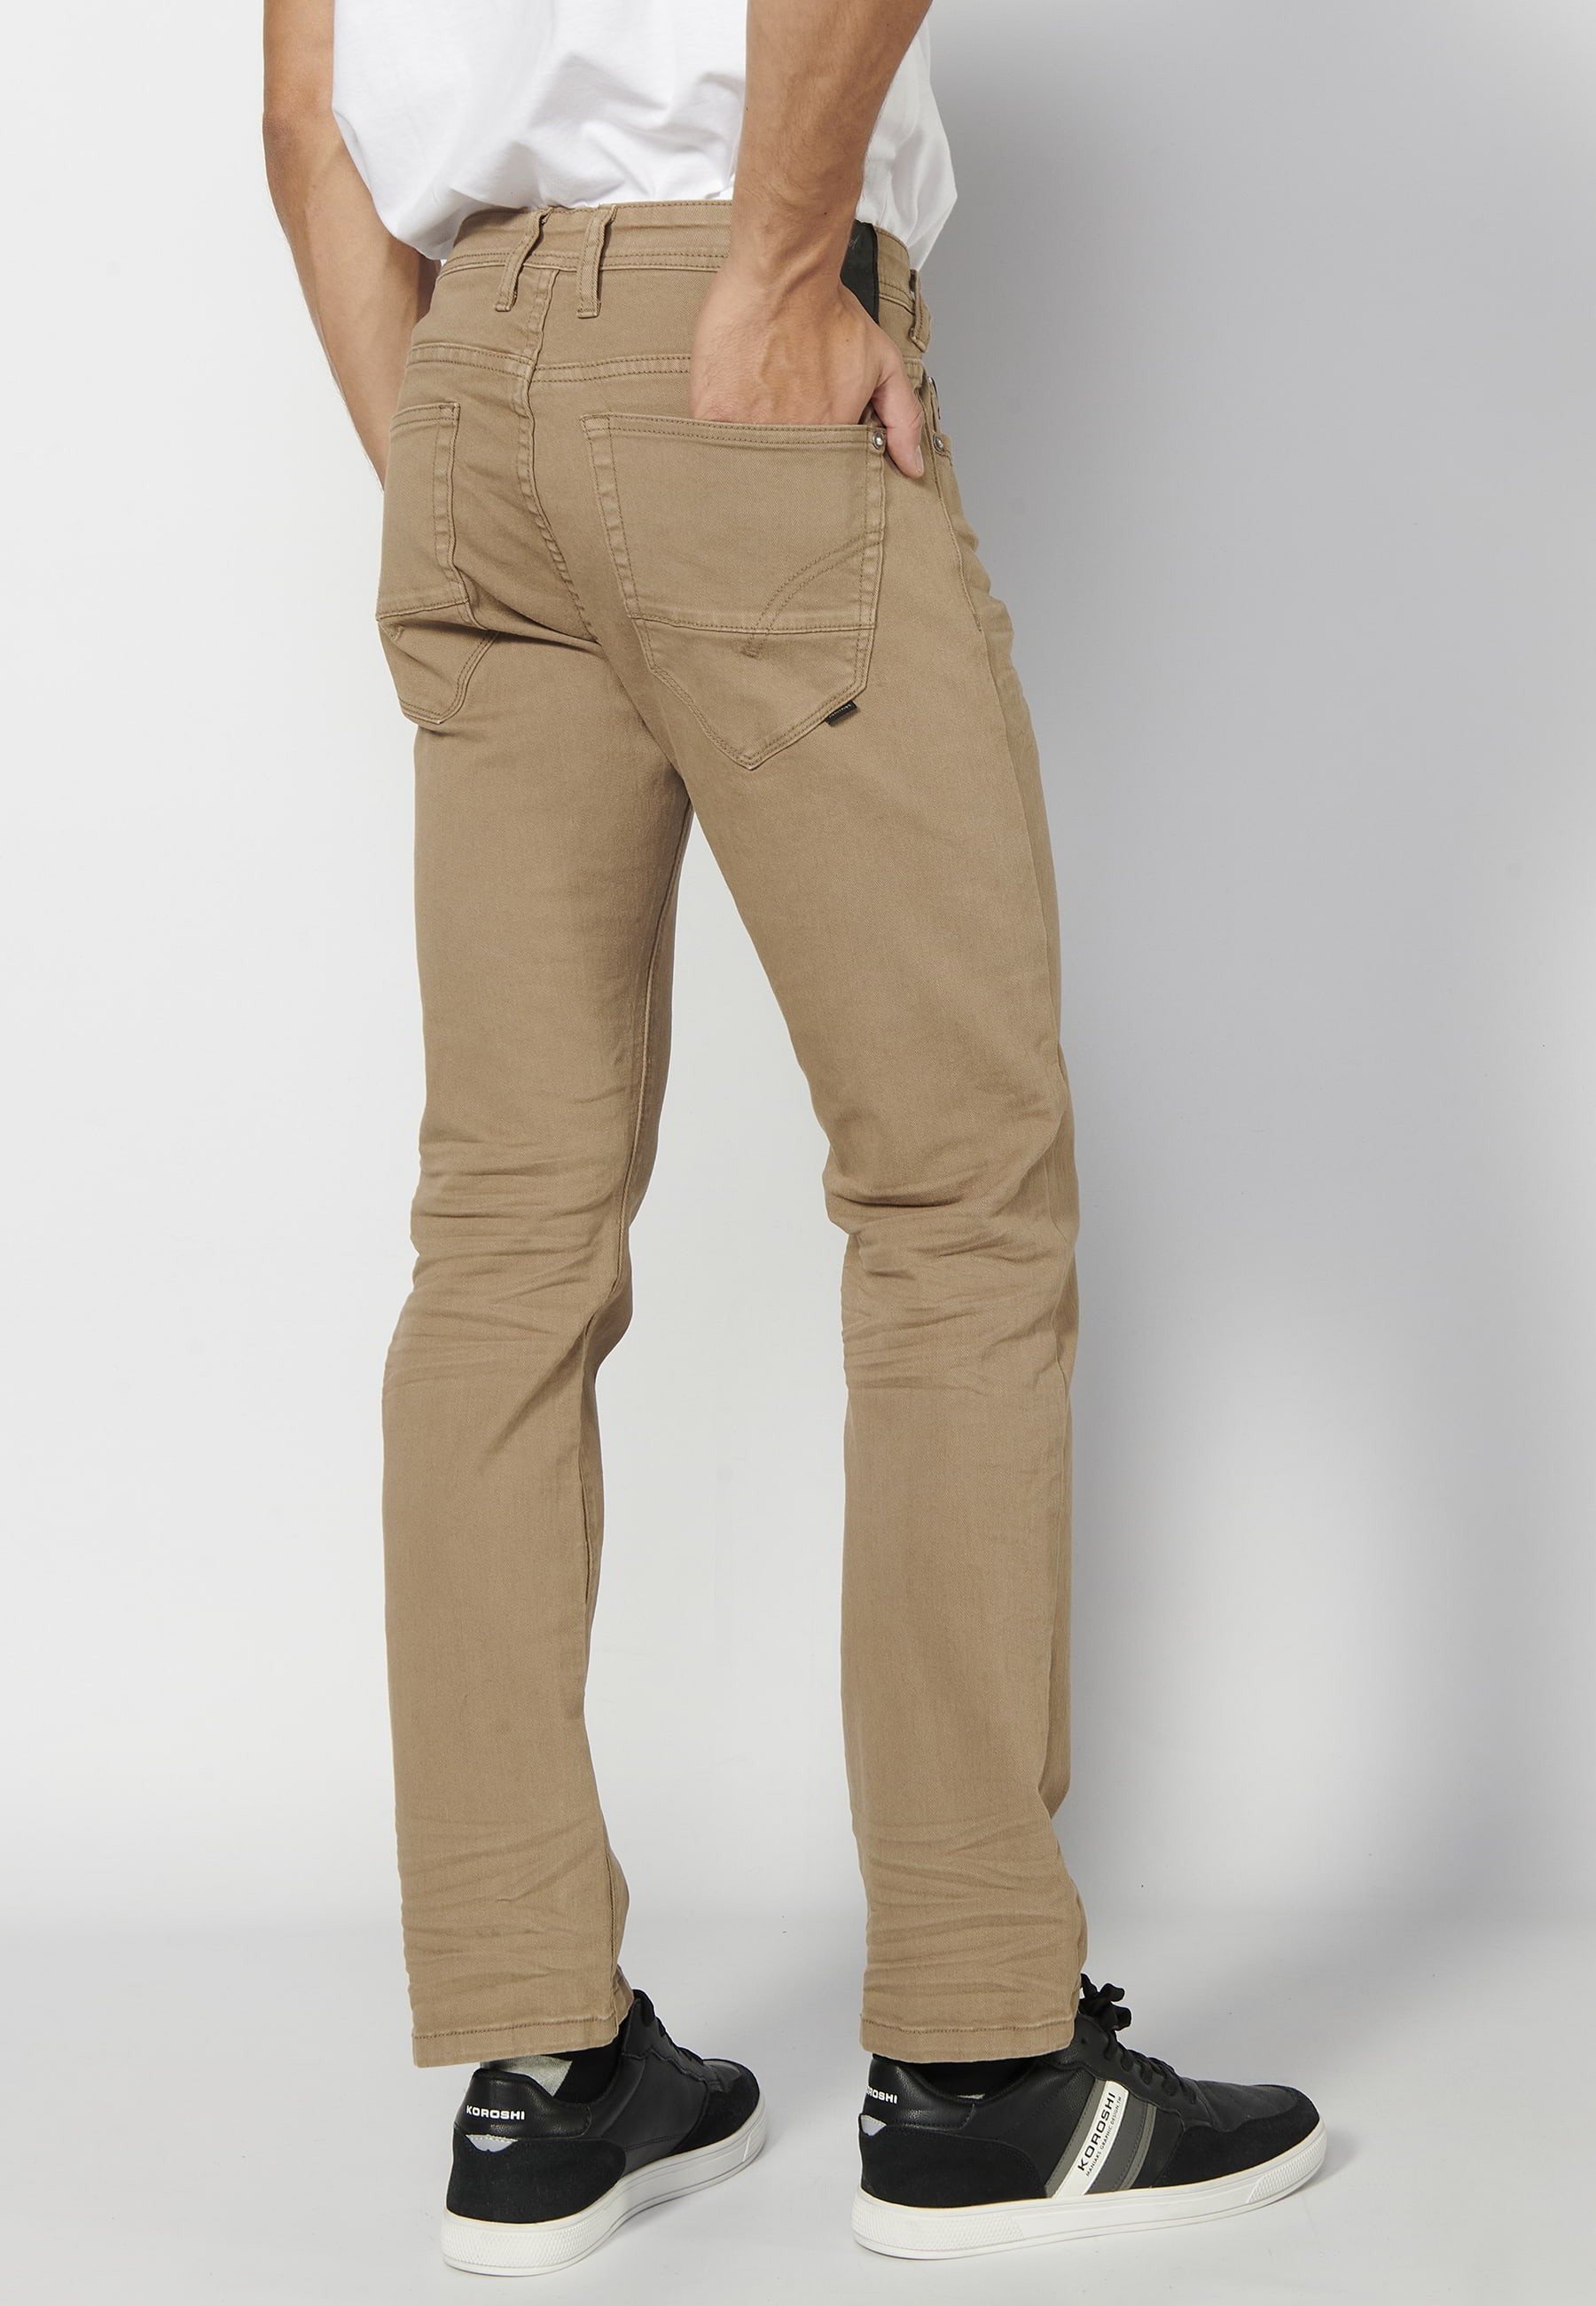 Pantalons llargs strech regular fit, amb cinc butxaques, color Beige, per a Home 5